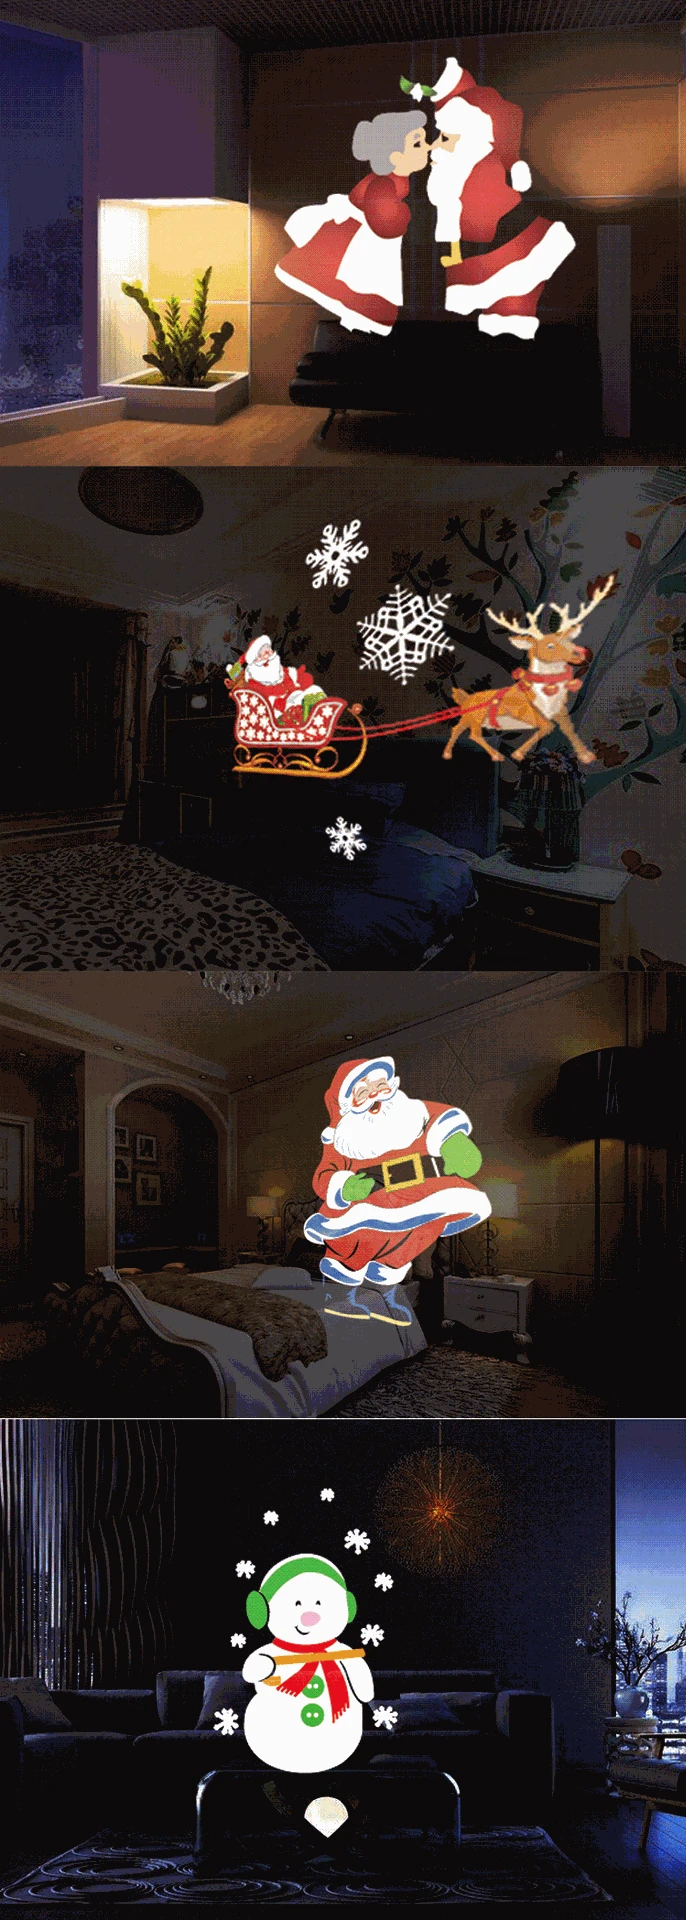 Санта-Клаус Снеговик светодиодный свет анимация Рождественская вечеринка проекционная лампа дистанционное управление с таймером, вращающимся созвездием